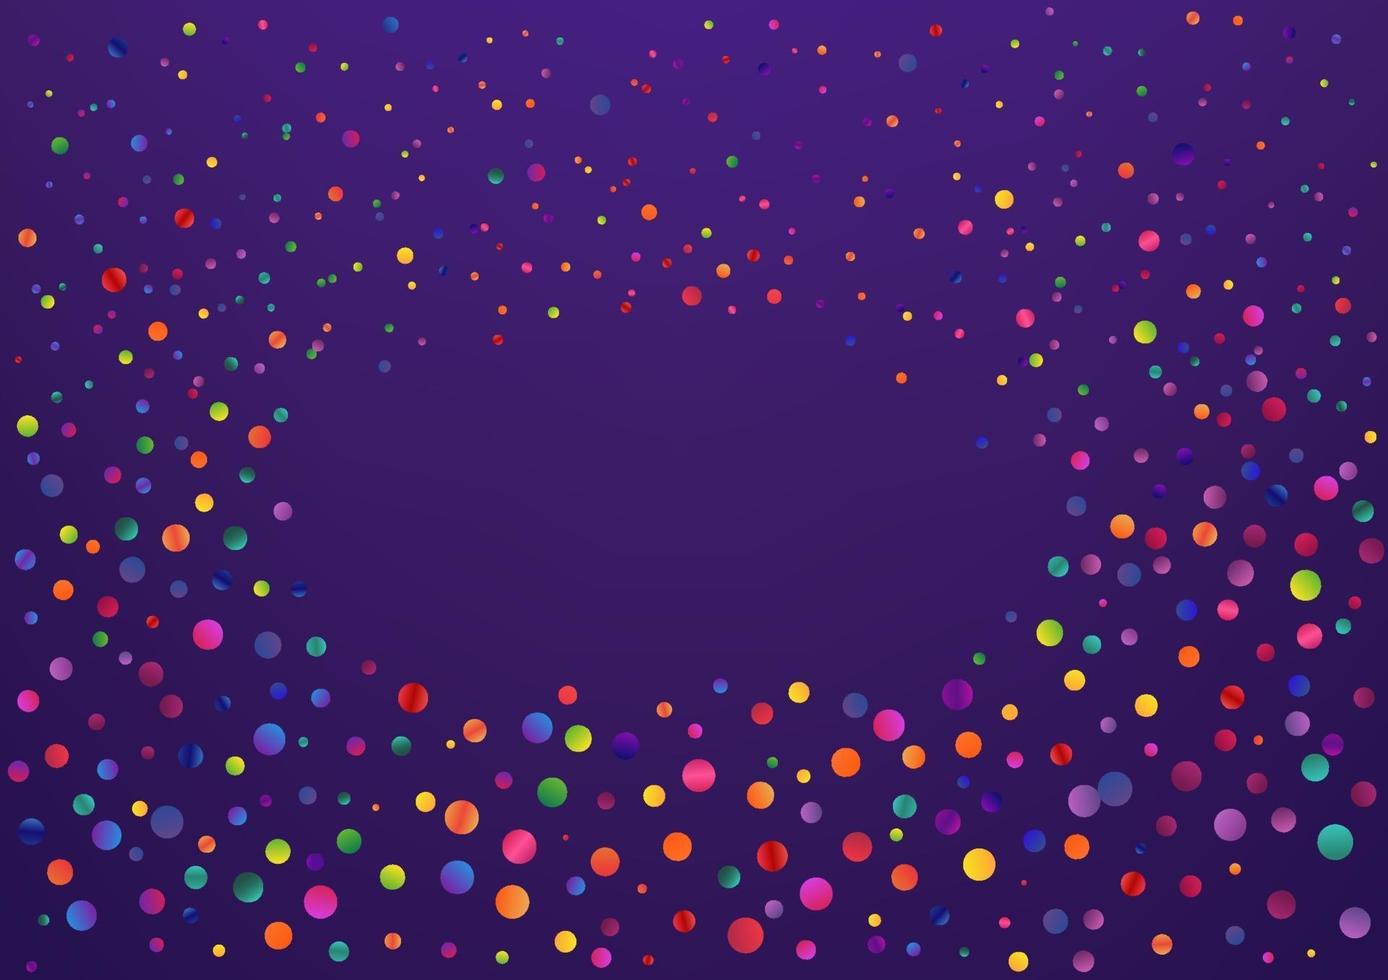 confetes de círculo colorido sobre fundo violeta. fundo abstrato do vetor